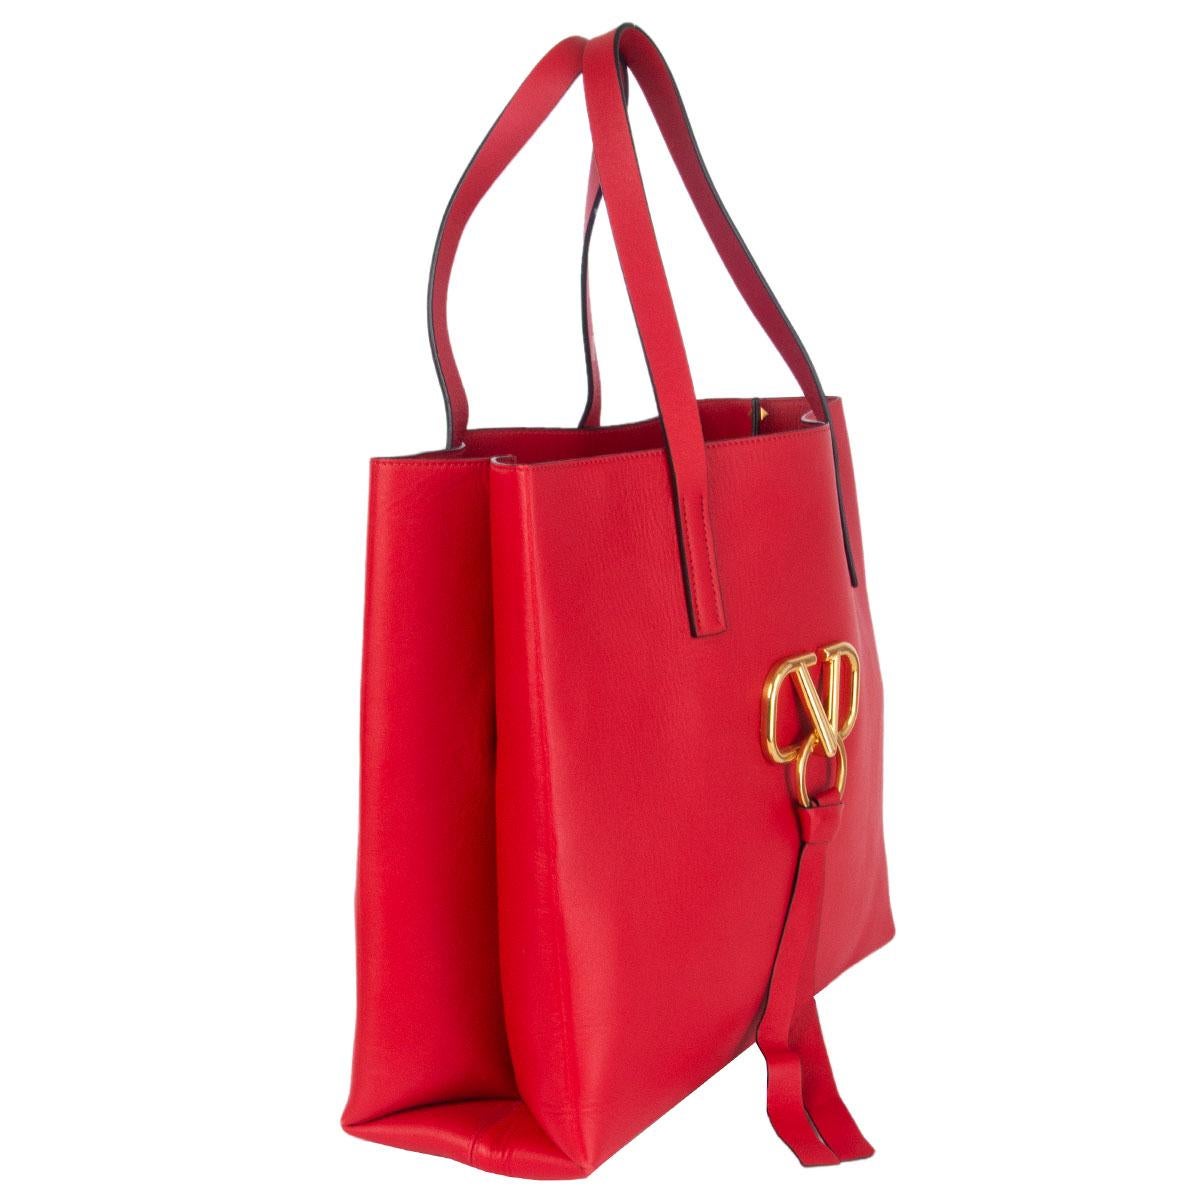 100% authentique Valentino grand sac fourre-tout VRING en cuir rouge avec une plaque de logo en métal doré à l'avant et un porte-clés en cuir rouge assorti. Doublure en cuir rouge et pochette interne détachable en cuir avec fermeture éclair. A été